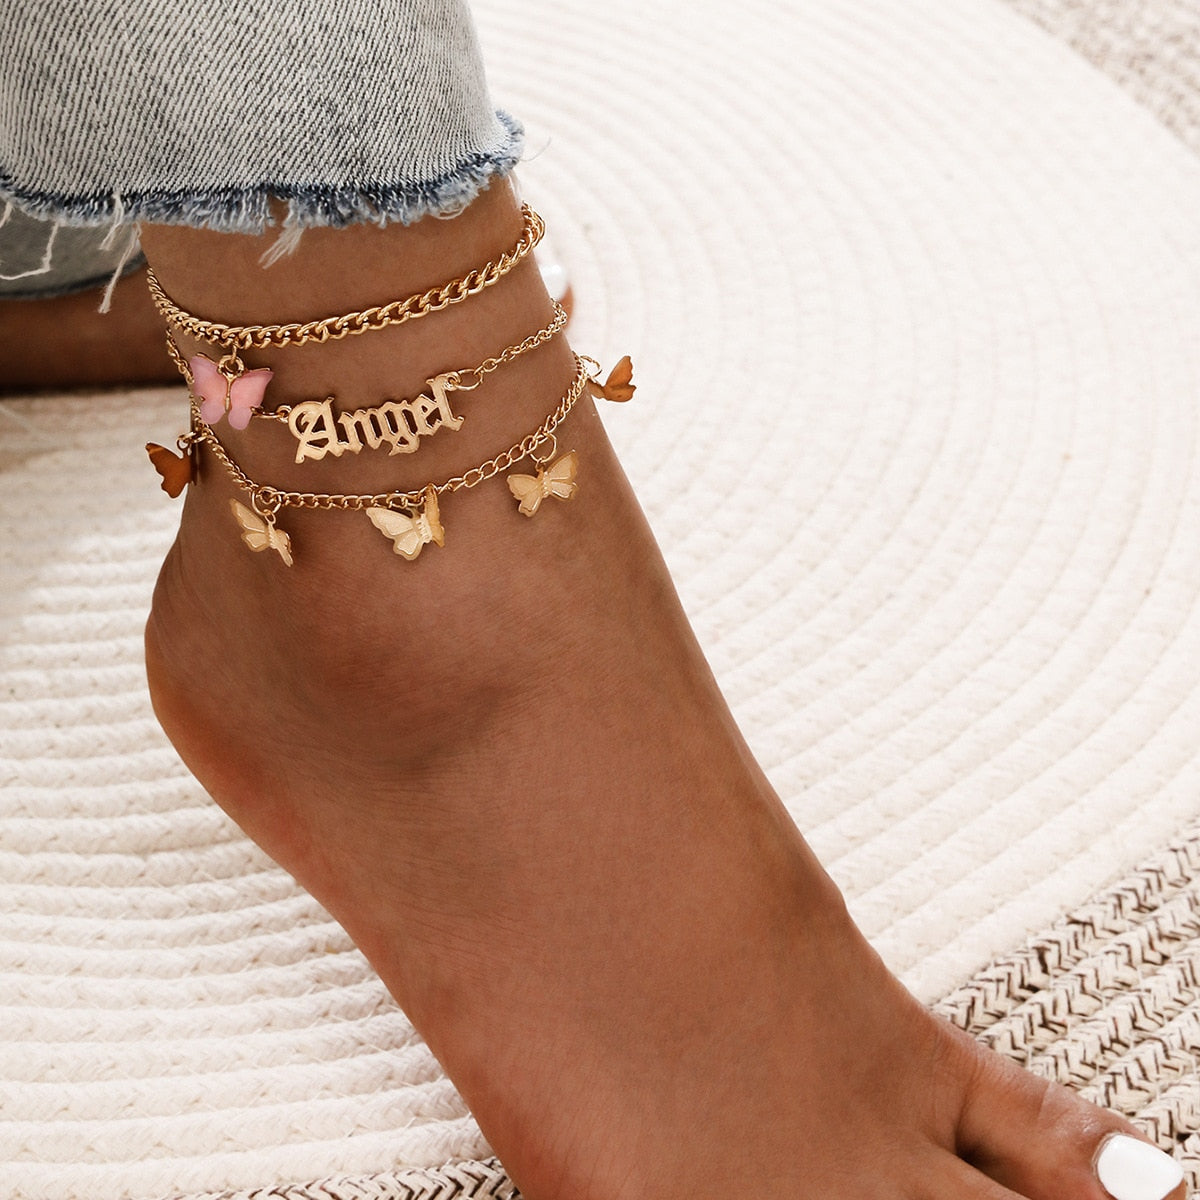 Bohemian Key Charm Anklet Set For Women Love Heart Lock Ankle Bracelet On Leg Foot Female Beach Jewelry